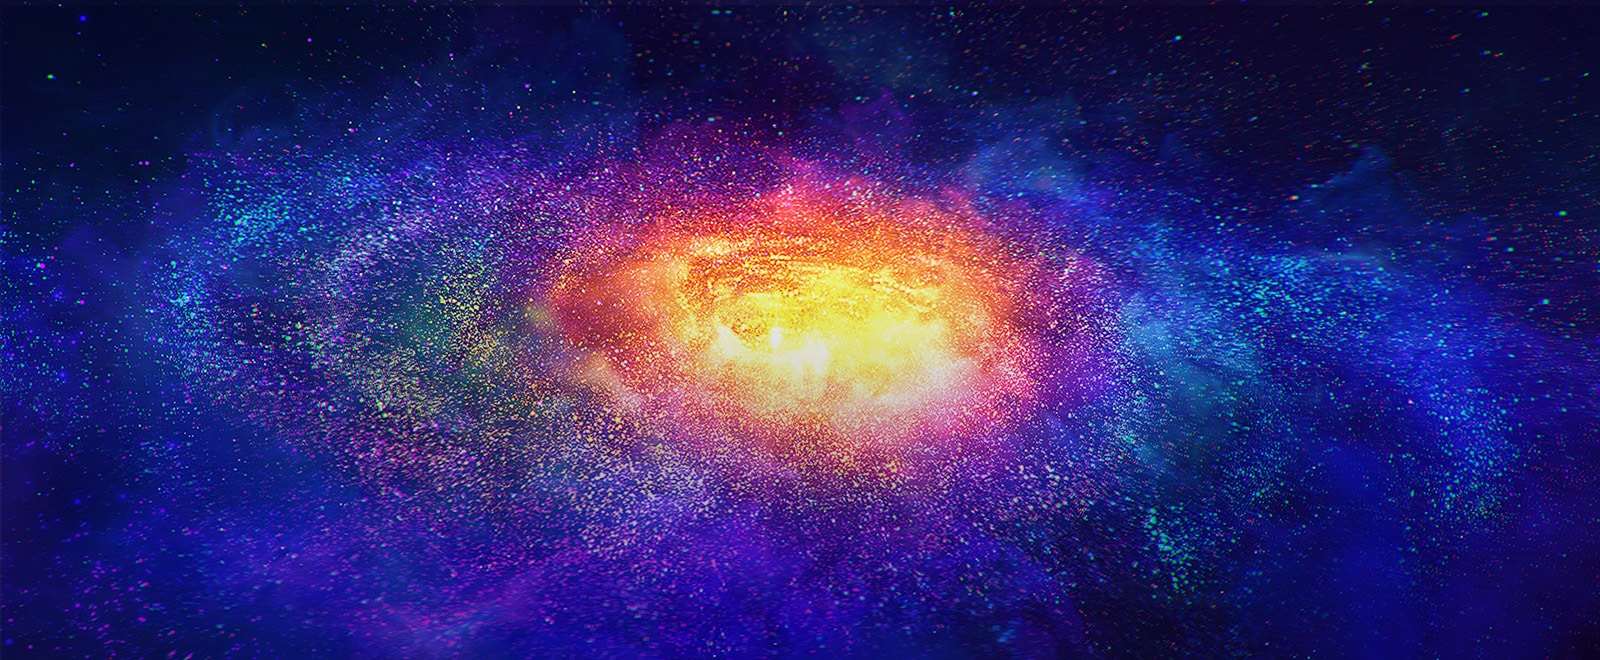 Скупчення зірок у космосі, що символізують пікселі в дисплеї OLED-телевізора LG